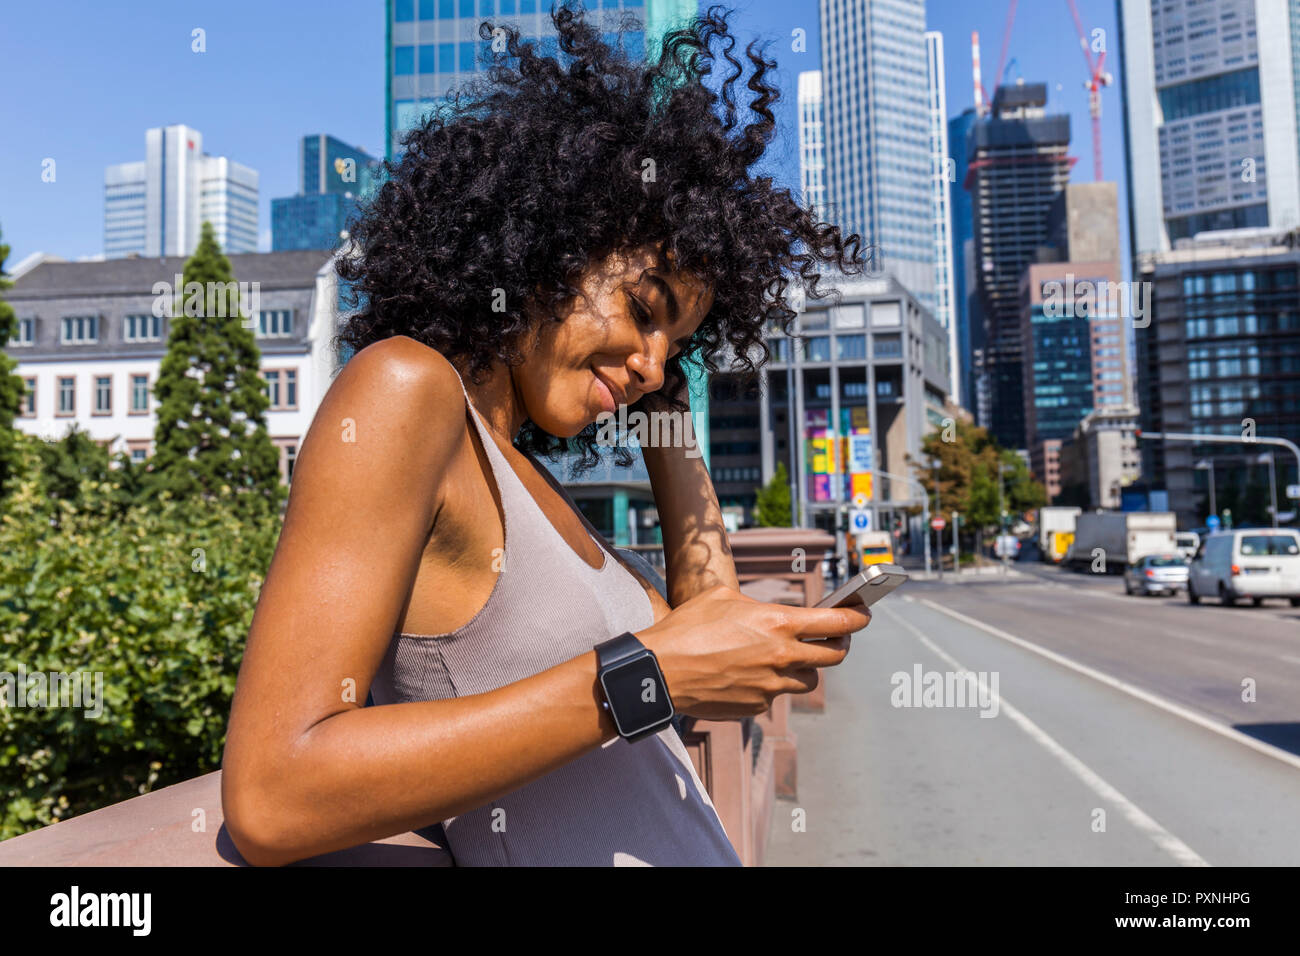 Alemania, Frankfurt, retrato de mujer sonriente con el pelo rizado usando un teléfono celular en la ciudad Foto de stock